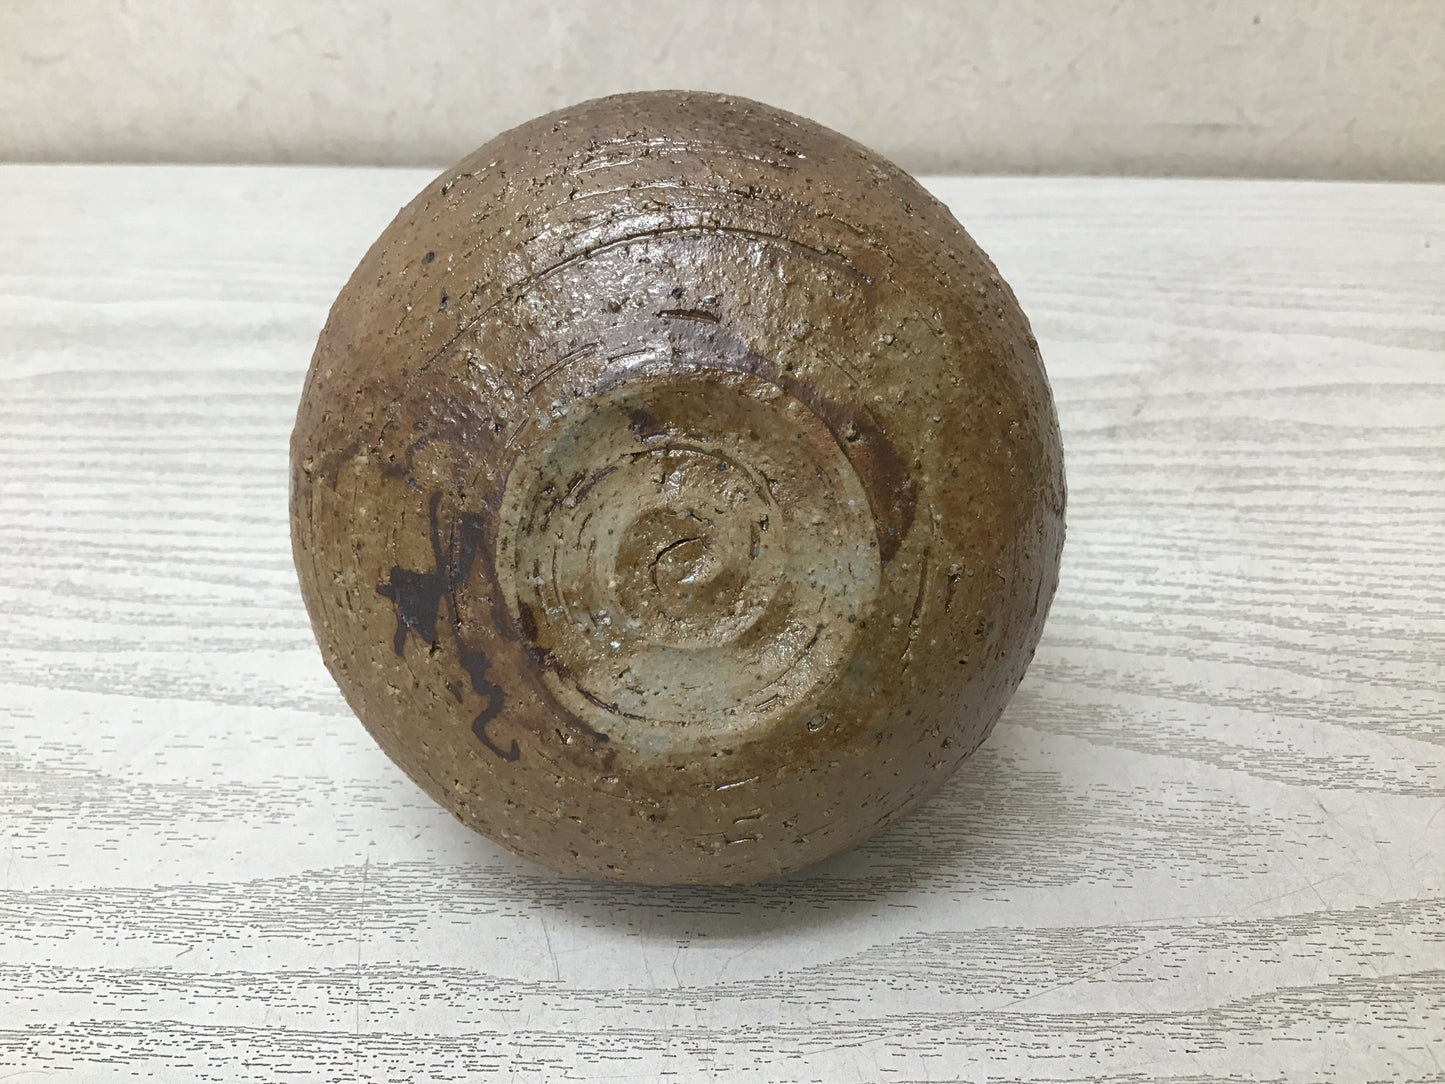 Y2628 CHOUSHI Shibukusa-ware Tokkuri sake bottle signed box Japanese antique